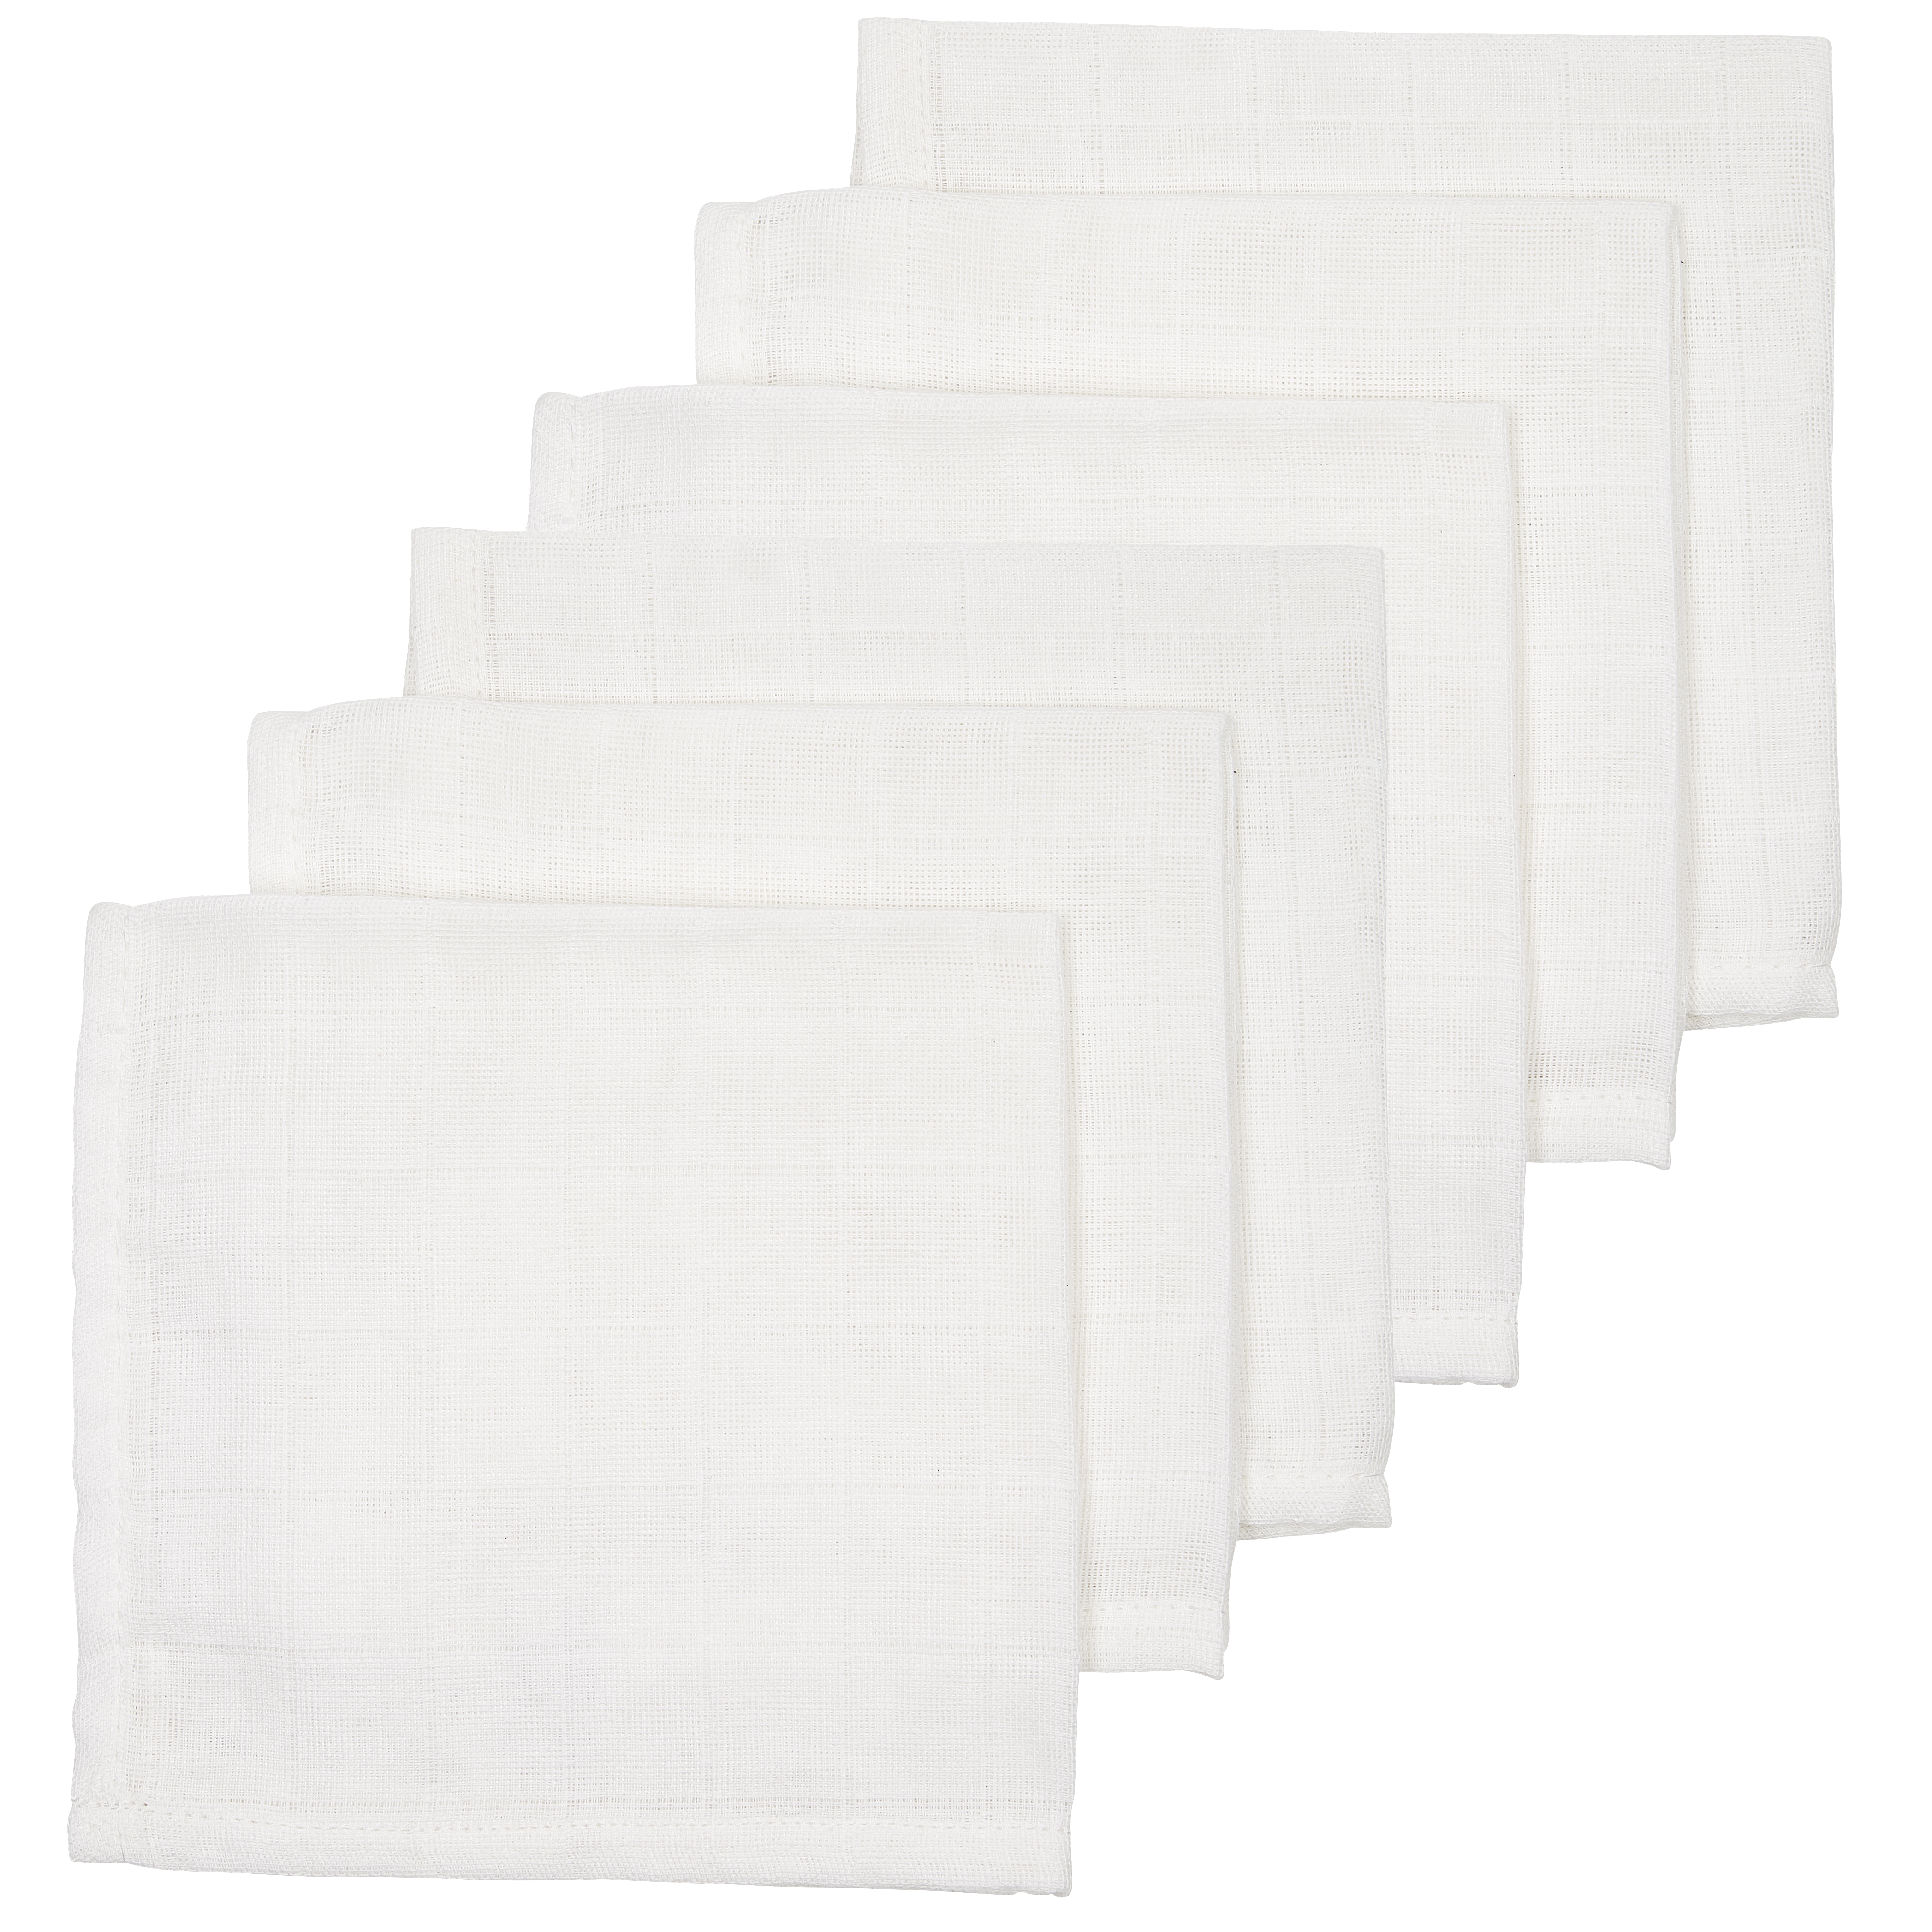 Organic Muslin Face Cloths 6-Pack - White - 30X30cm